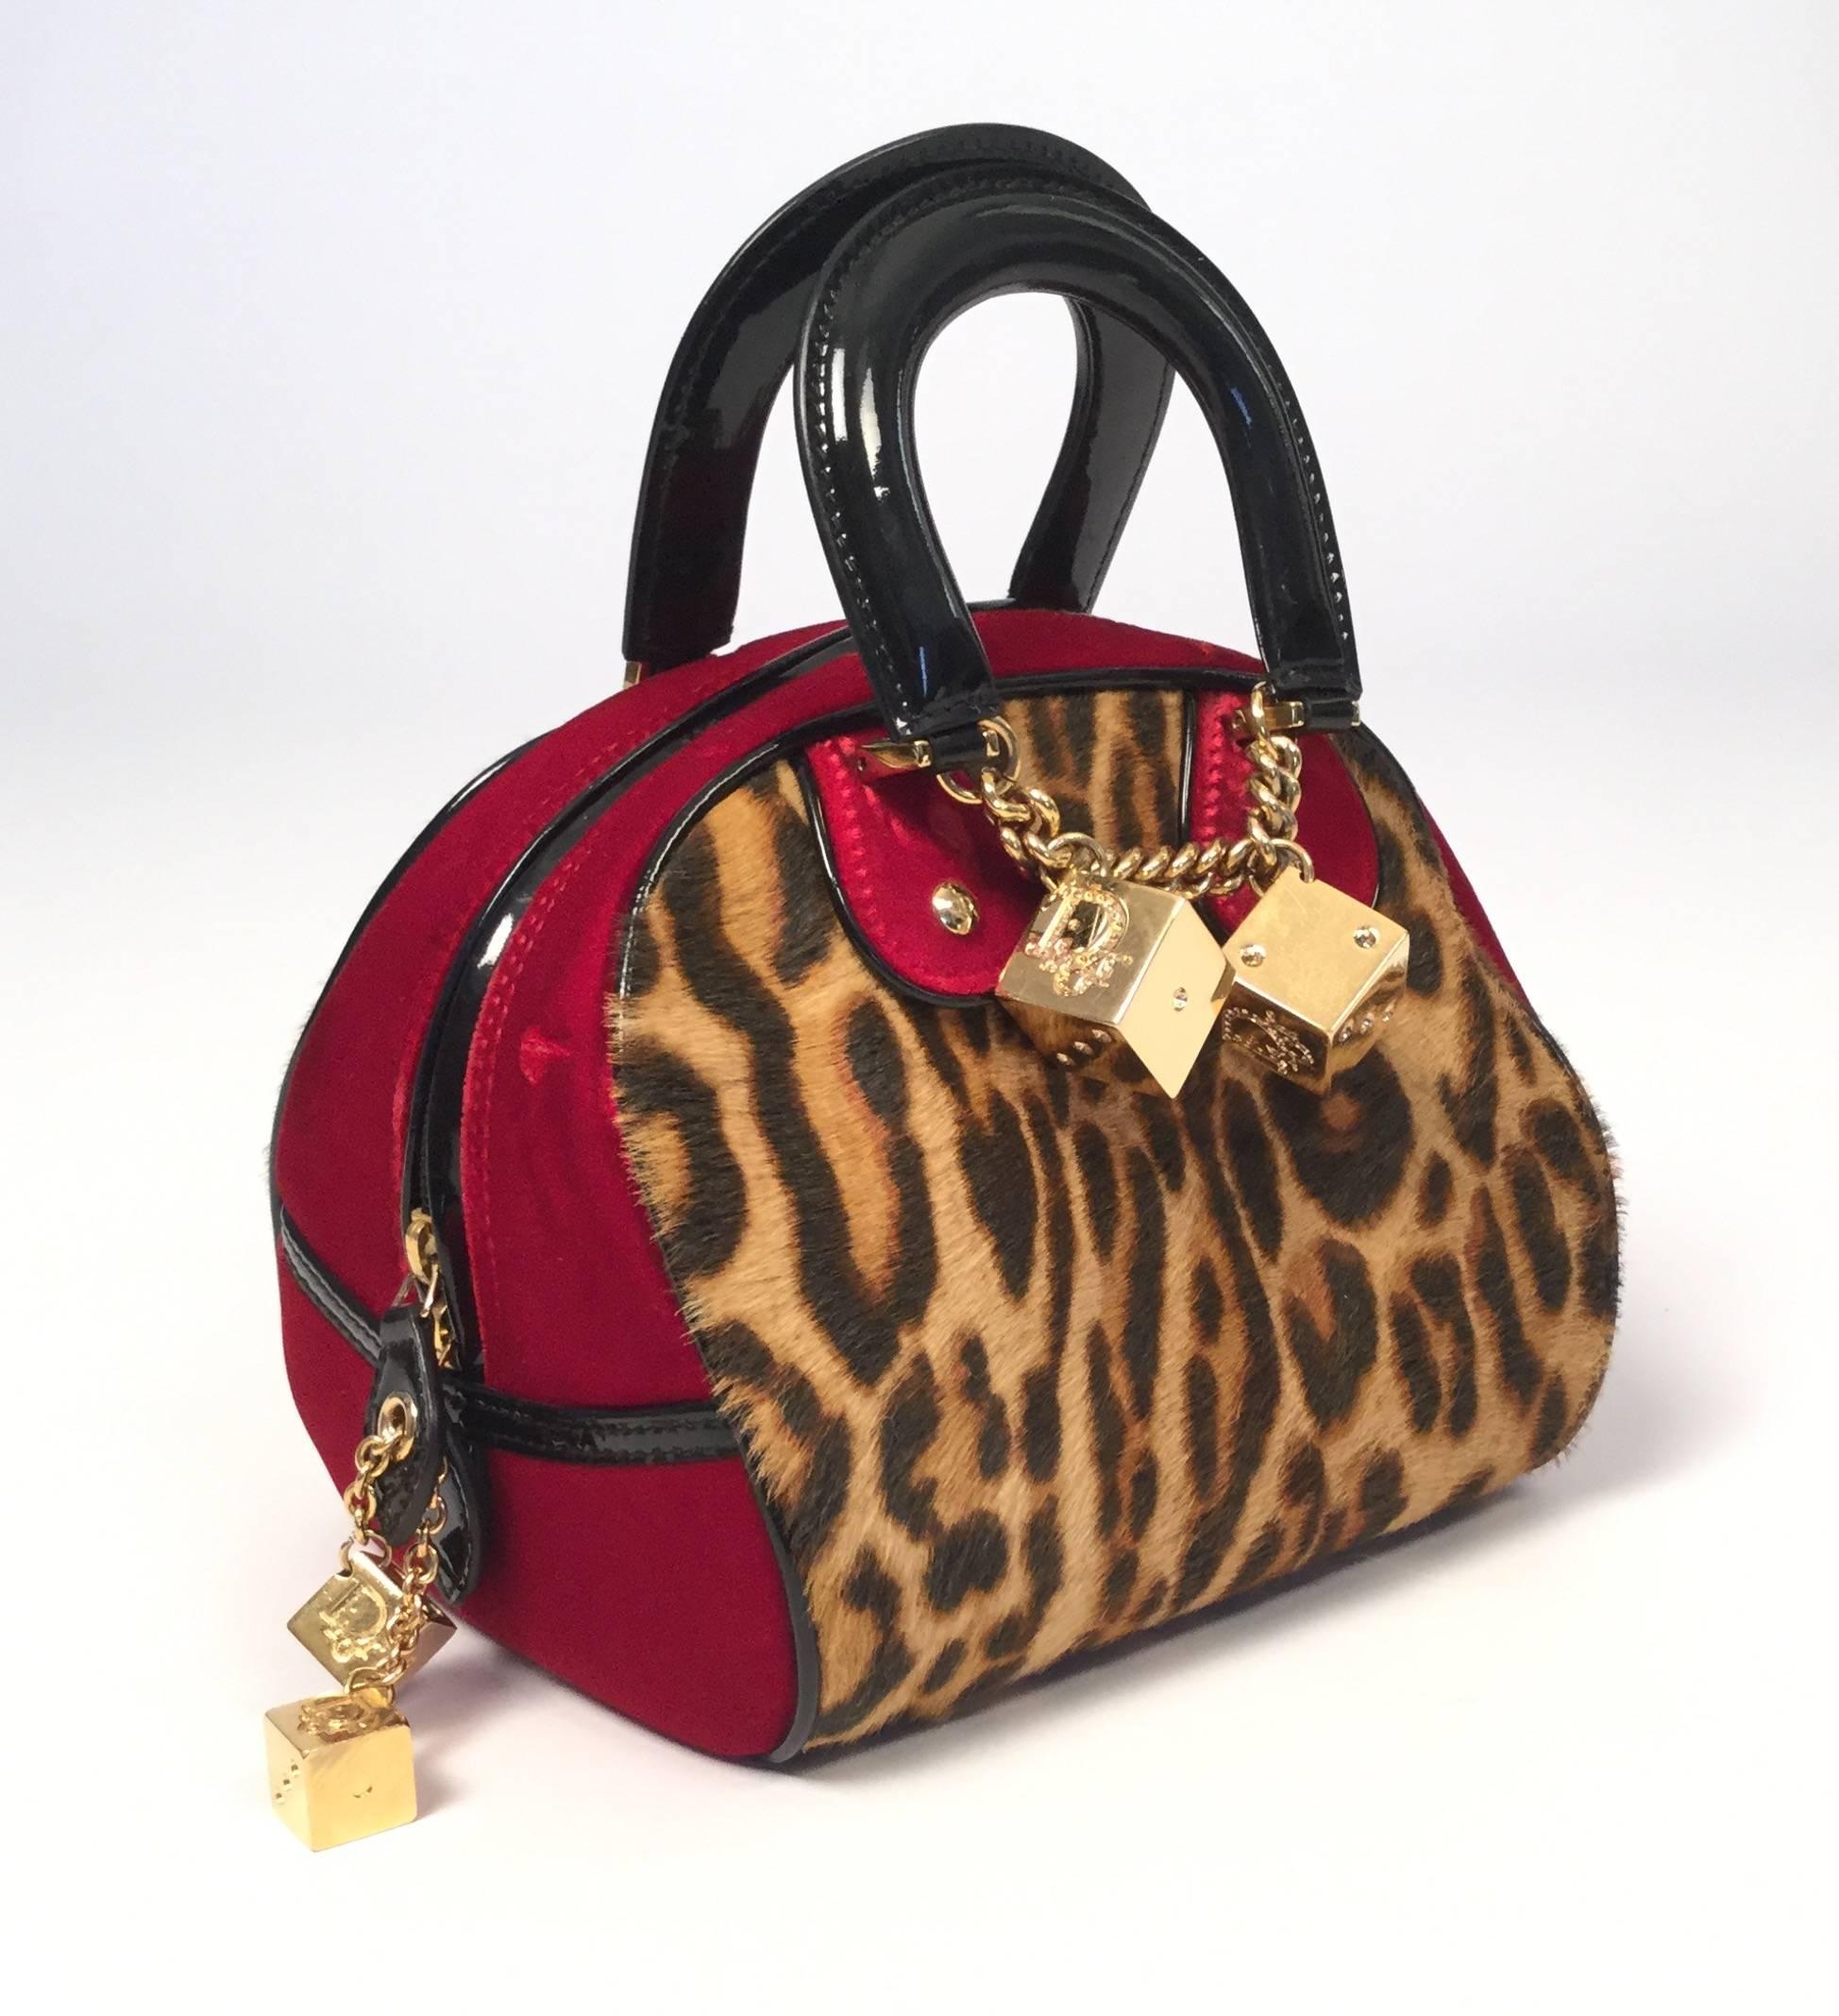 Parfait pour l'automne, ce sac à main rarissime de la collection automne 2004 de Christian Dior.

Ce sac à main 